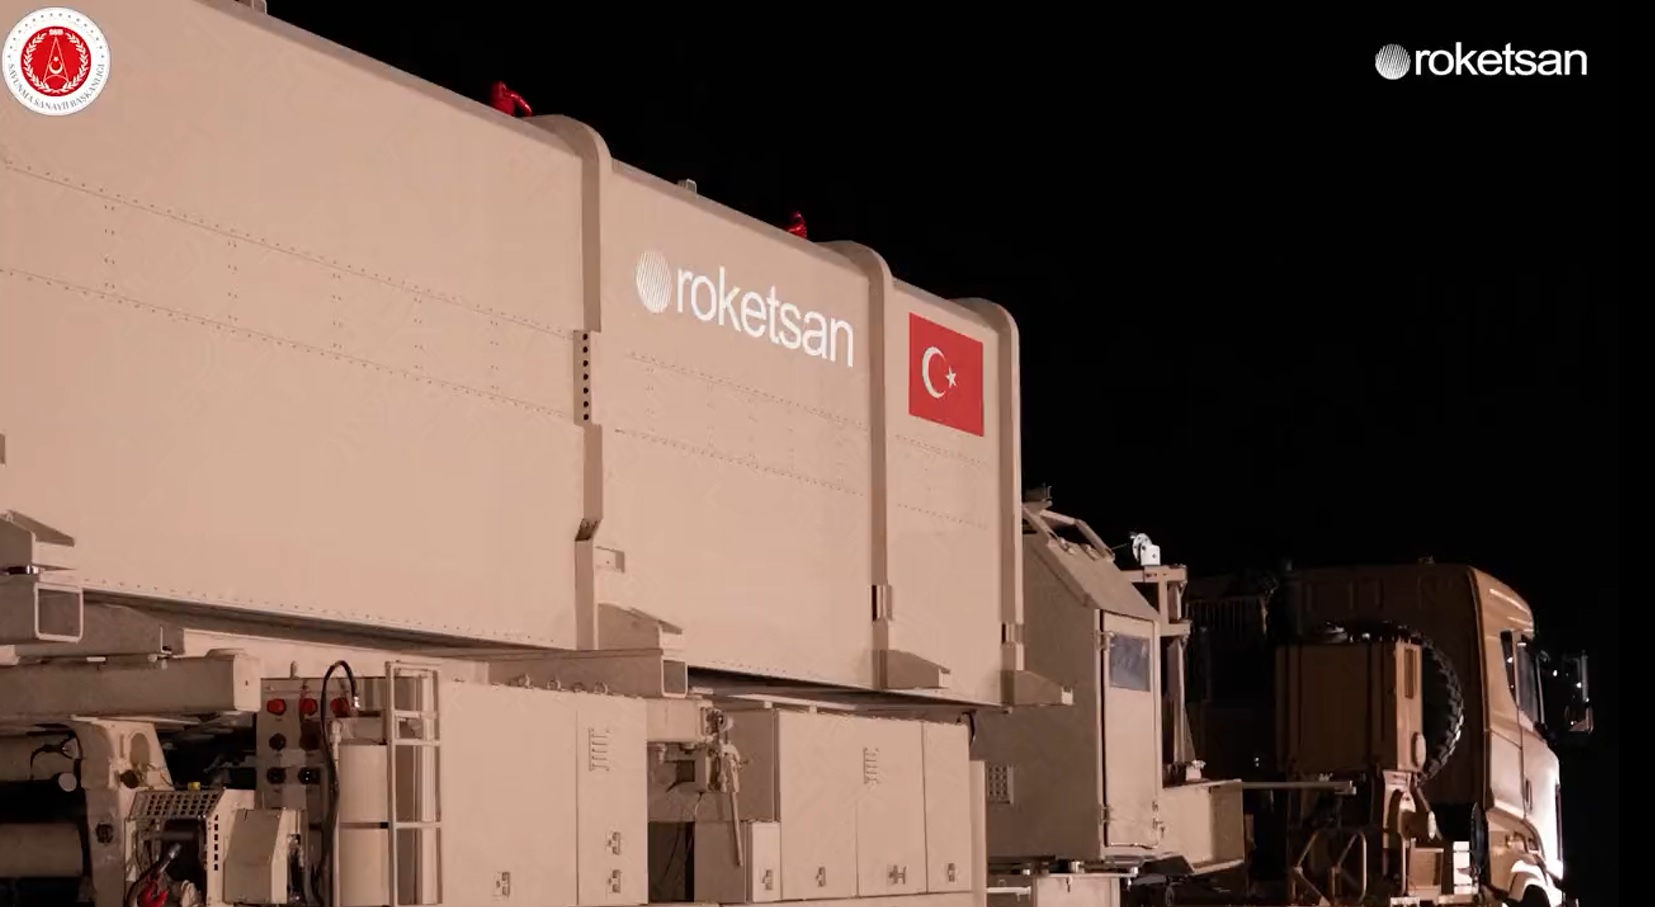 Roketsan dévoile le CENK, le premier missile balistique turc de moyenne portée capable d'atteindre des cibles situées à plus de 1 000 km.